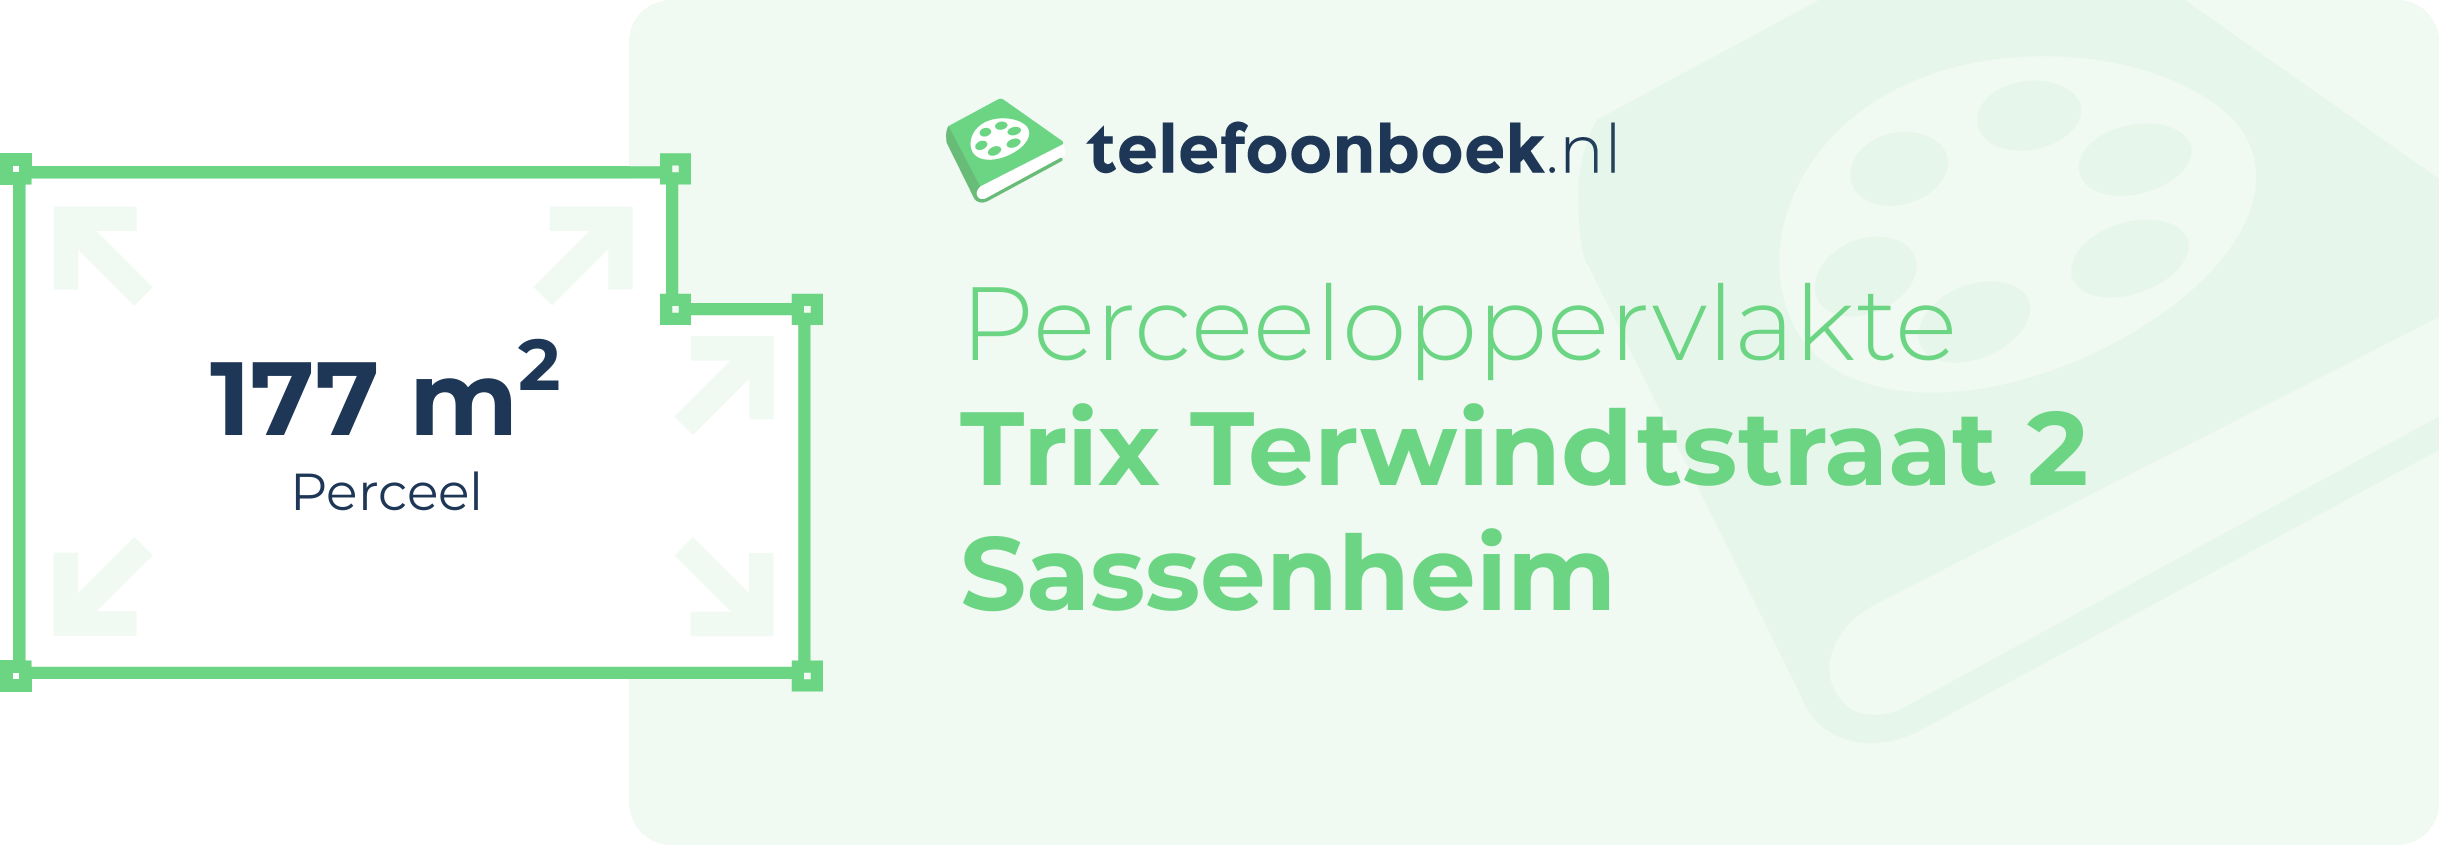 Perceeloppervlakte Trix Terwindtstraat 2 Sassenheim